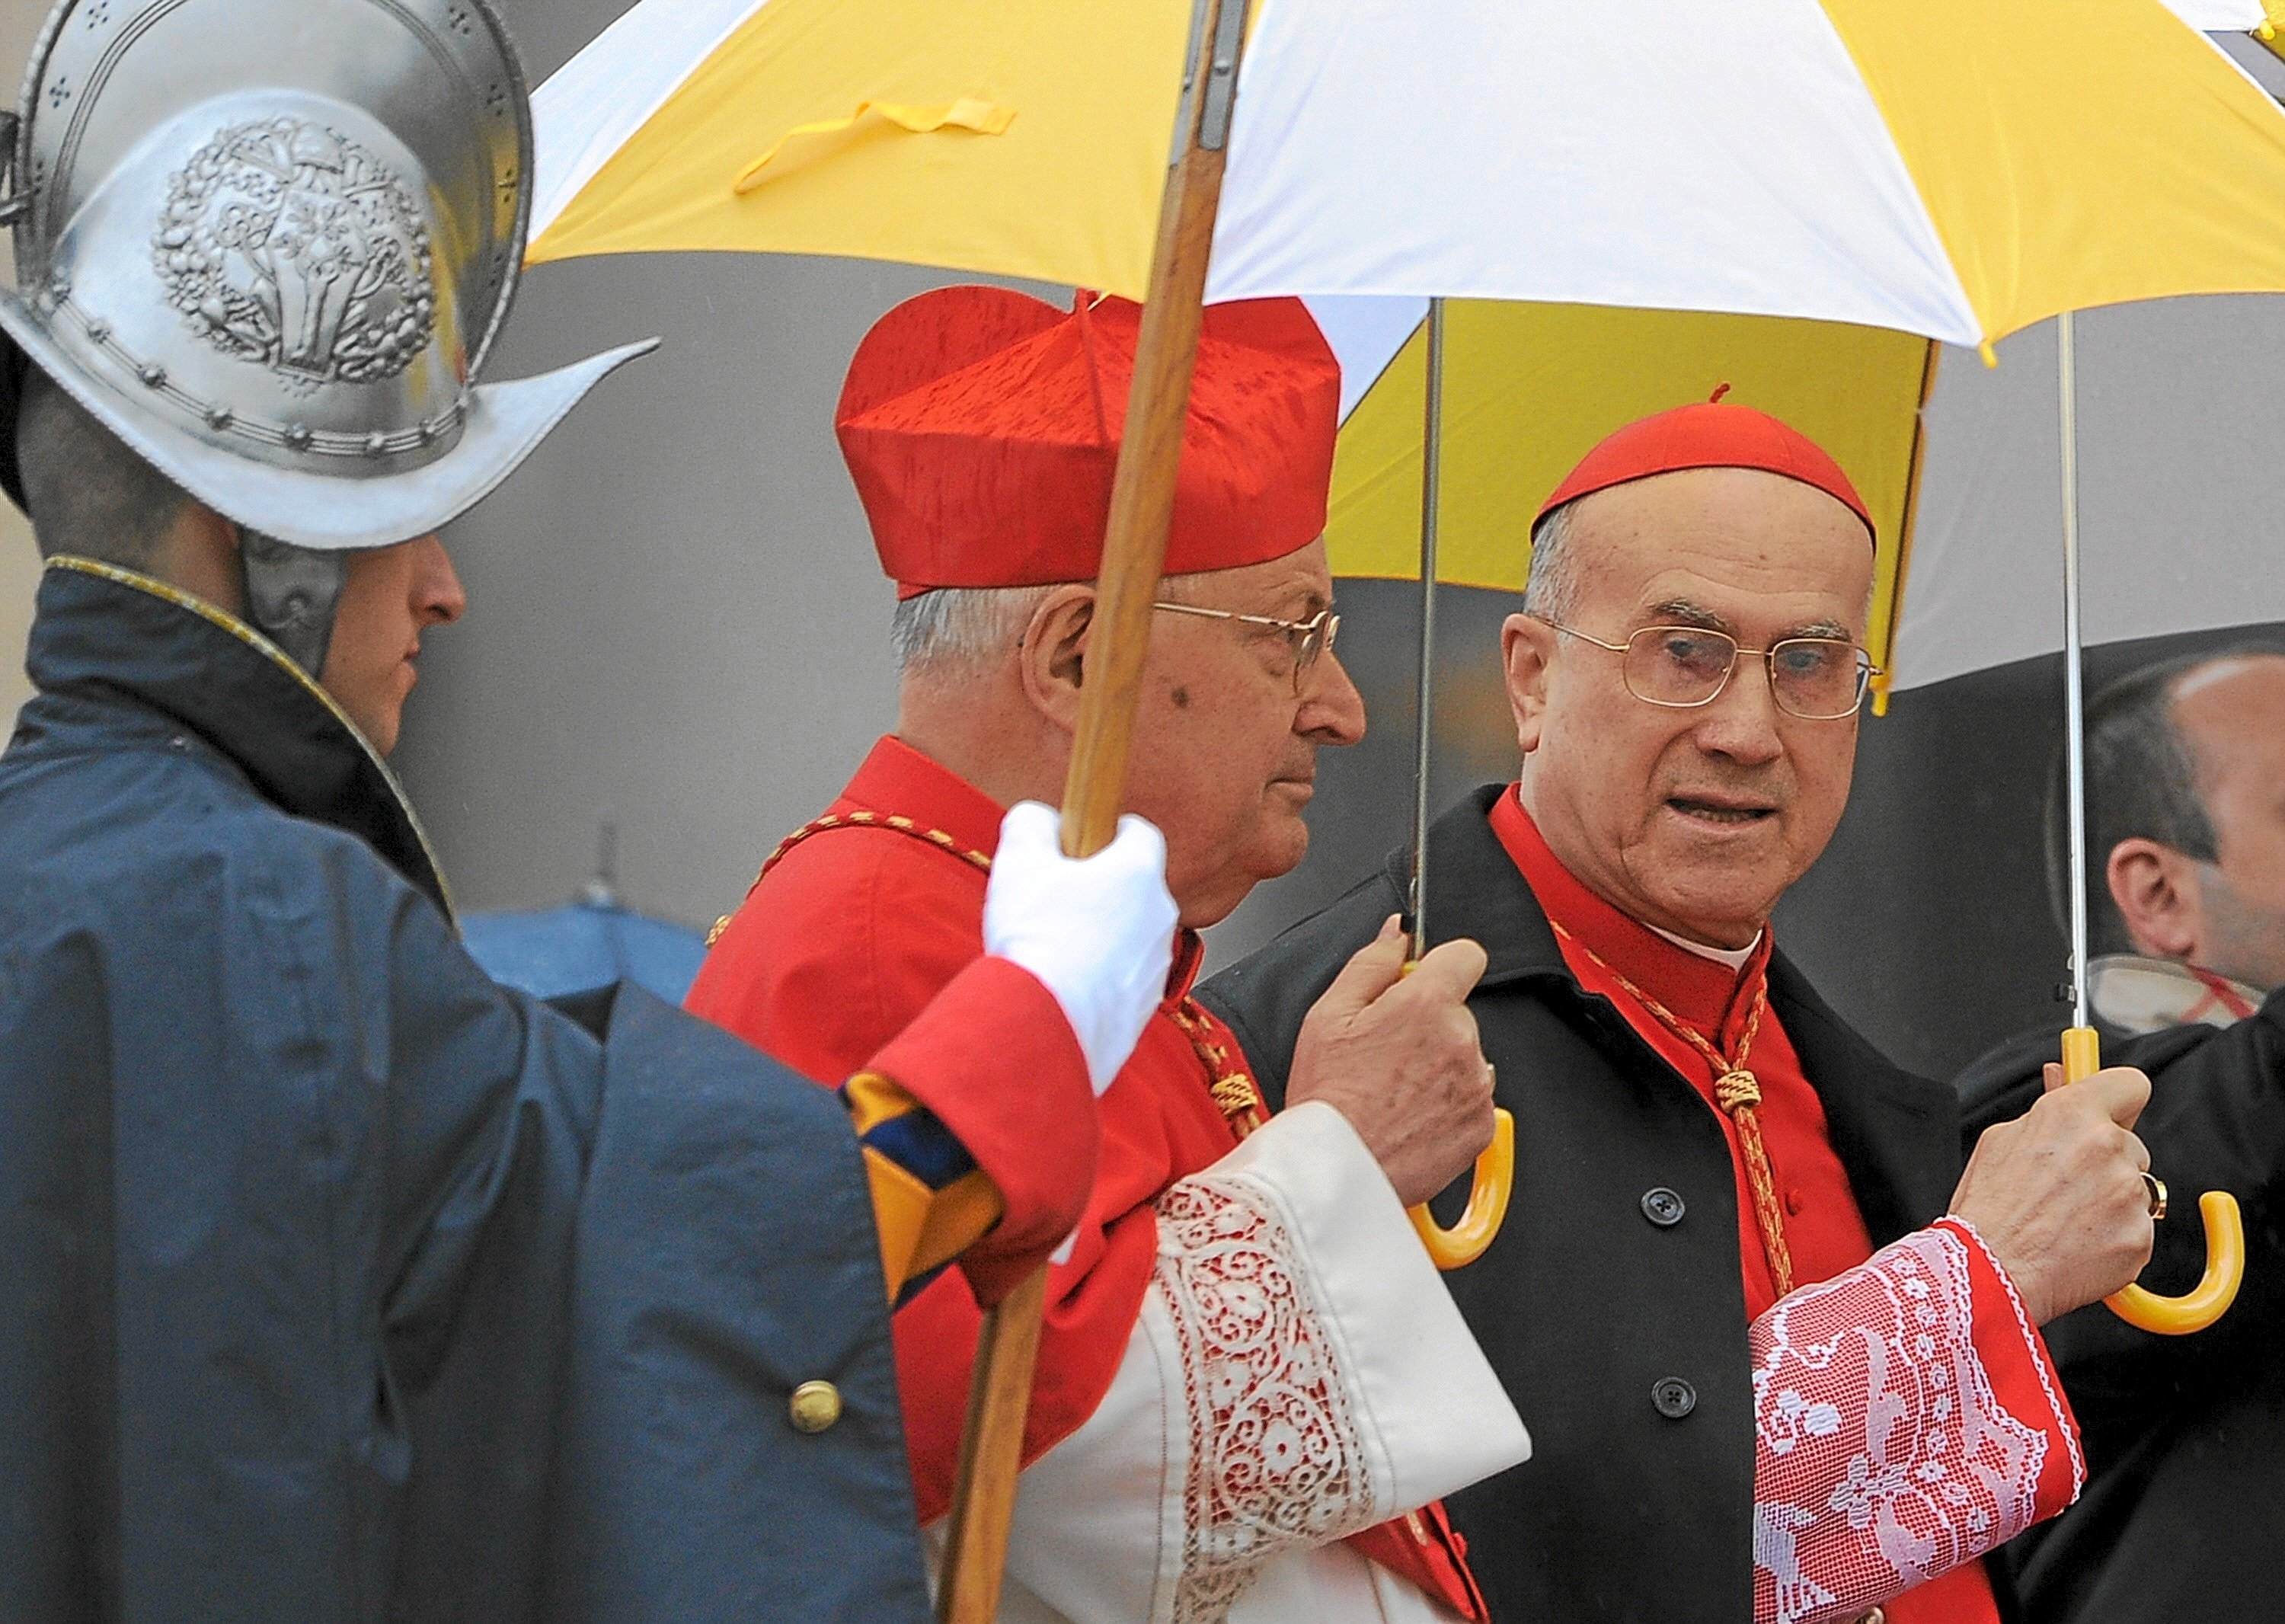 Muere el cardenal Sodano, ex mano derecha de Juan Pablo II y Benedicto XVI